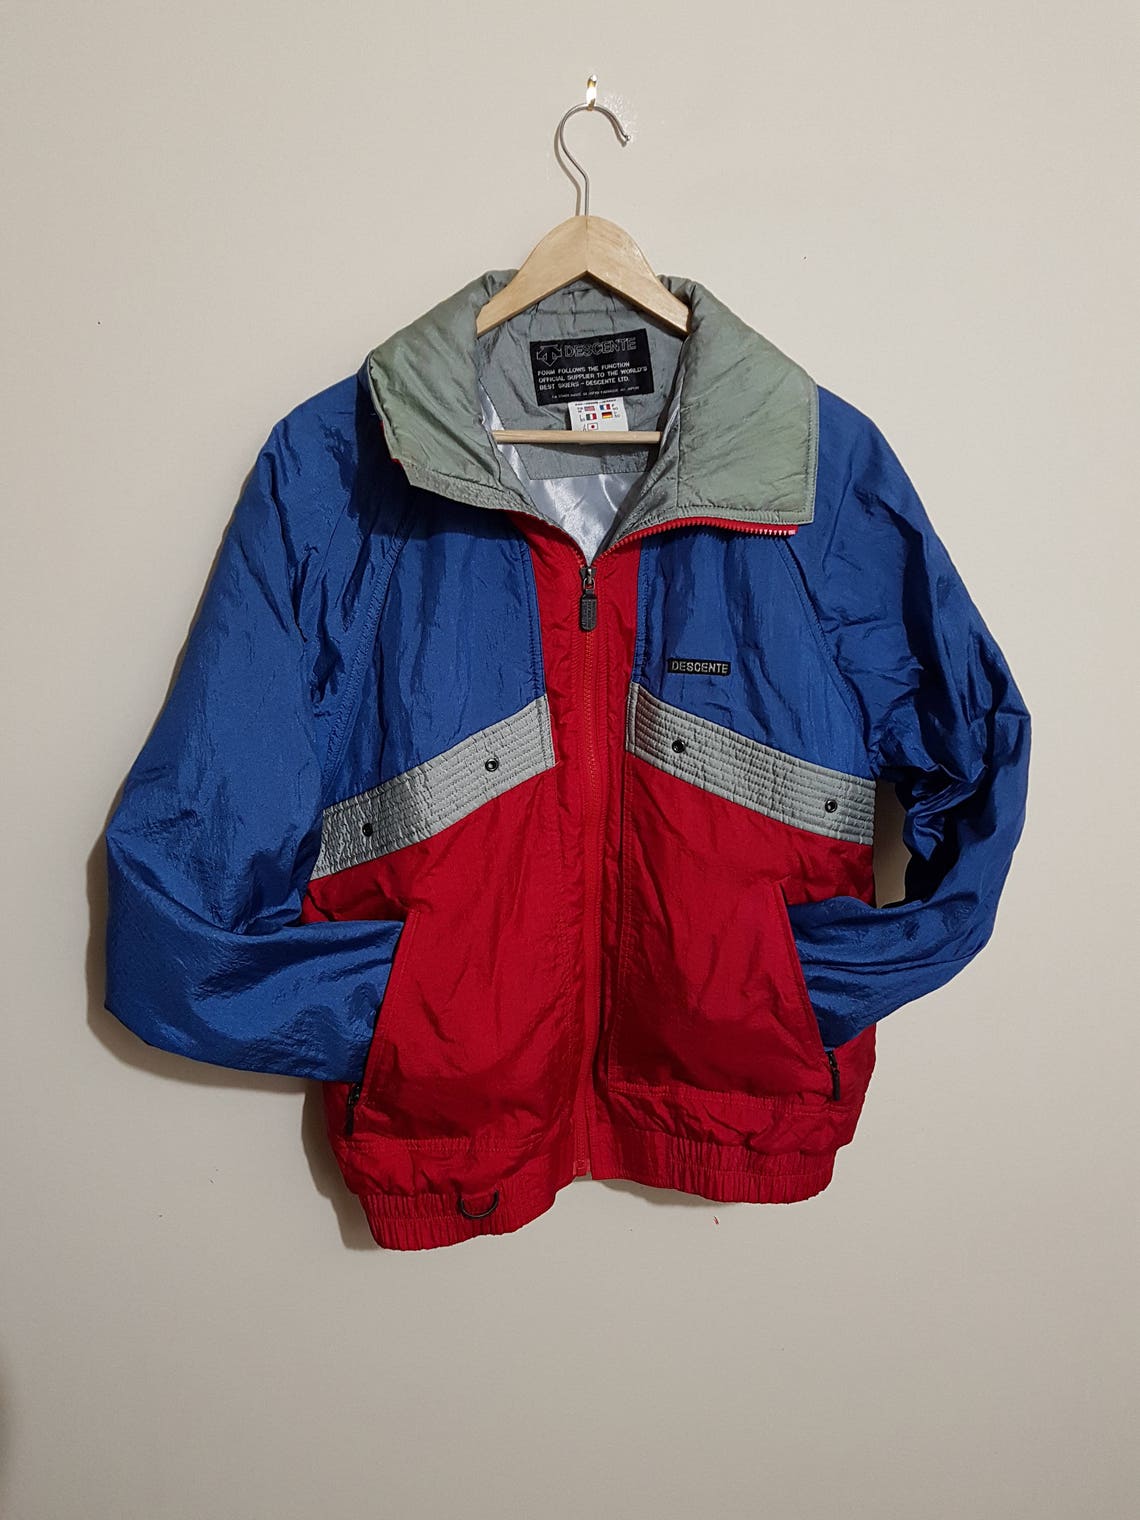 Vintage Descente Ski Jacket 90 S Descente Ski Jacket Japan - Etsy